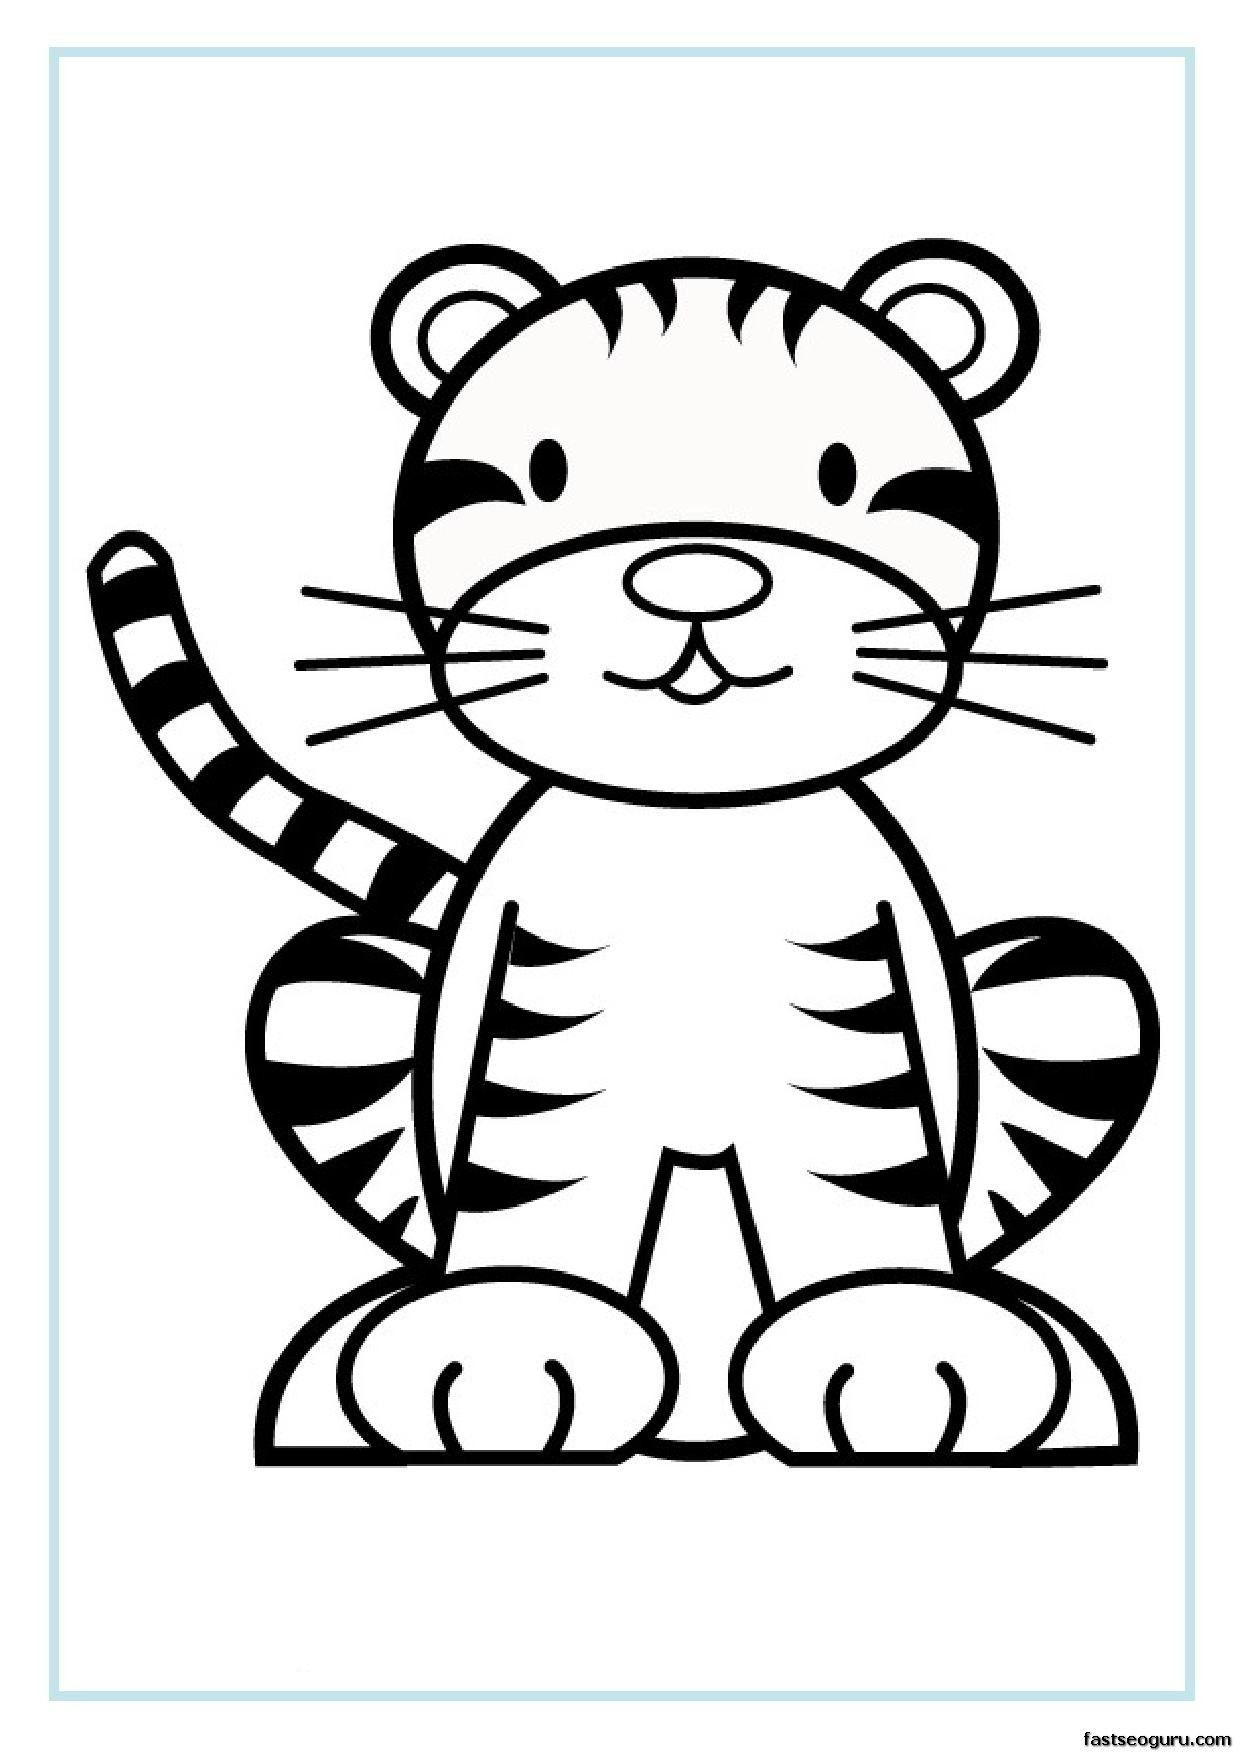 Tranh tô màu con hổ phong cách cartoon